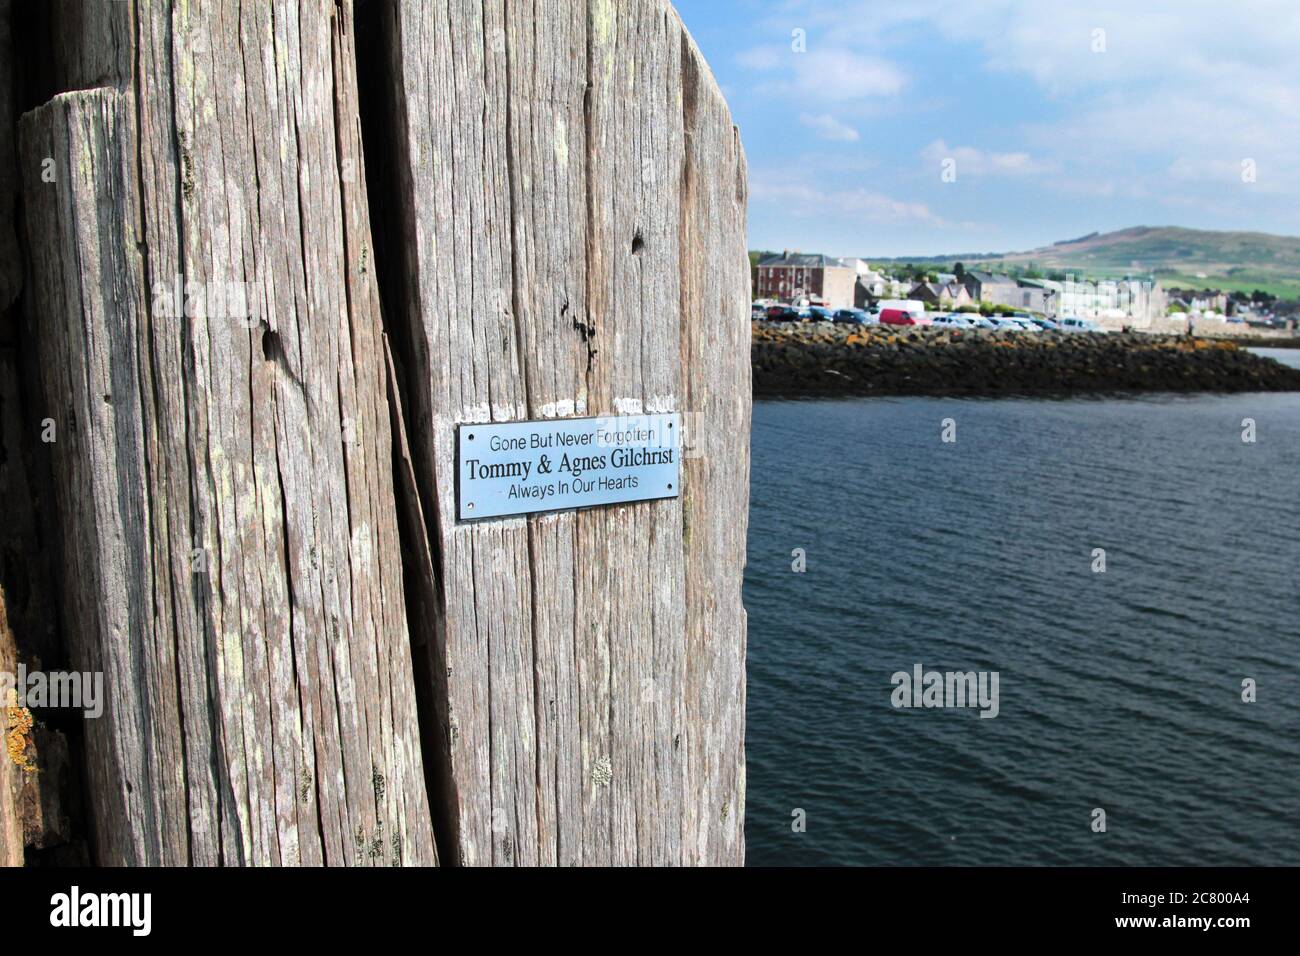 Una placa conmemorativa es un clavo para el muelle abandonado en la ciudad de vacaciones de Helensburgh, situado en el Firth de Clyde. Debe haber sido el lugar favorito de las parejas. Alan Wylie/ALAMY © Foto de stock